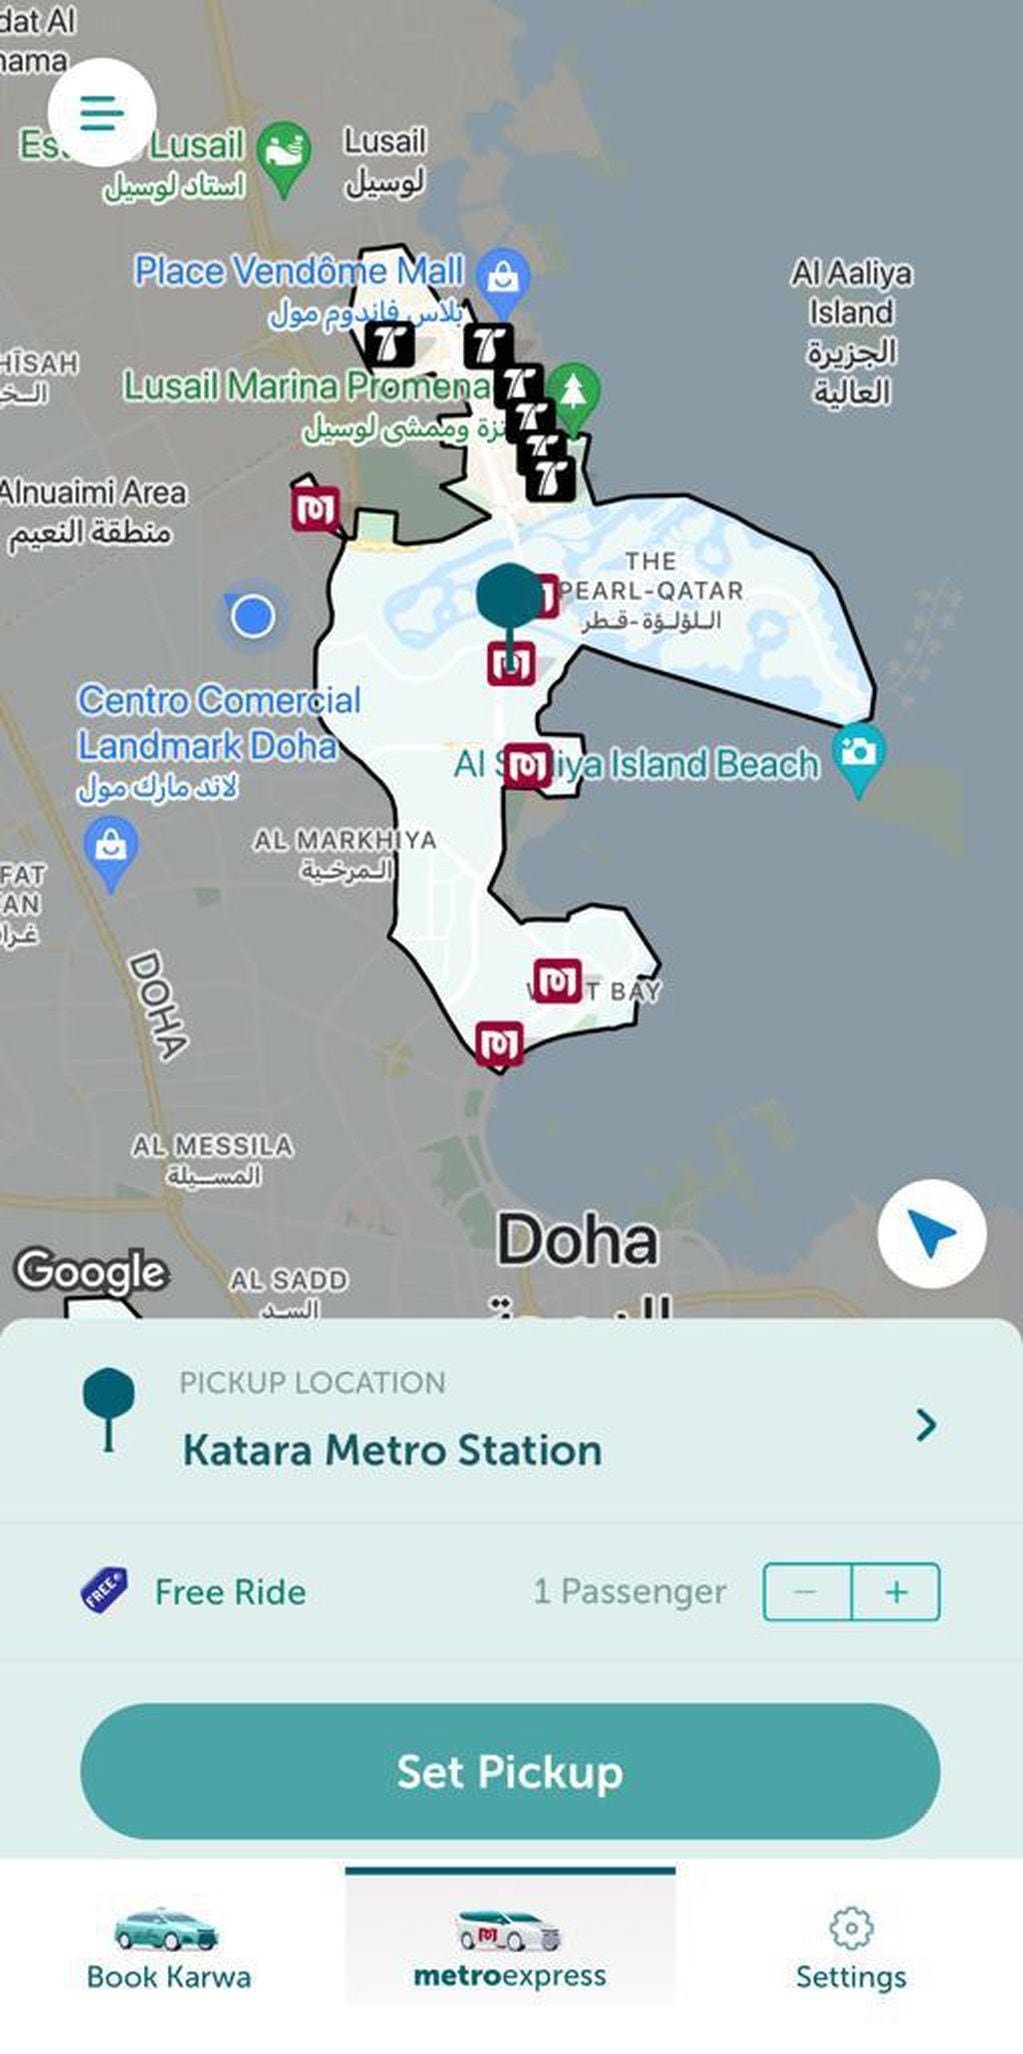 Para pedir un viaje gratuito en Karwa se debe ir a la pestaña "Metro Express". Allí se verá la zona donde funciona el servicio.